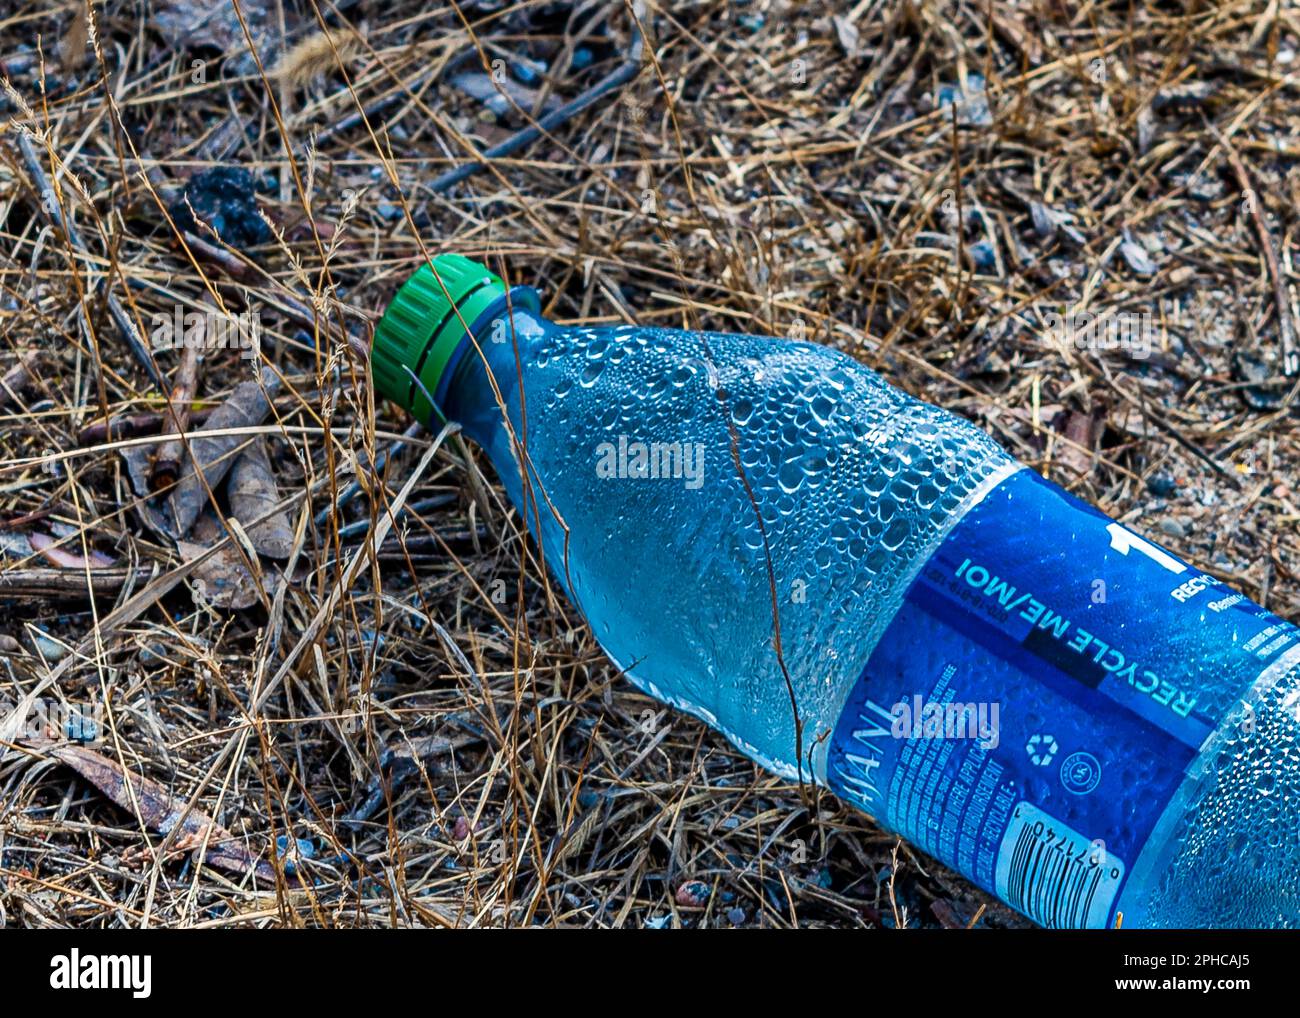 Environnement sale. Une bouteille en plastique lancée sur l'herbe pollue et met en valeur la nature et l'environnement naturel. Trop mauvais pour la nature. Banque D'Images